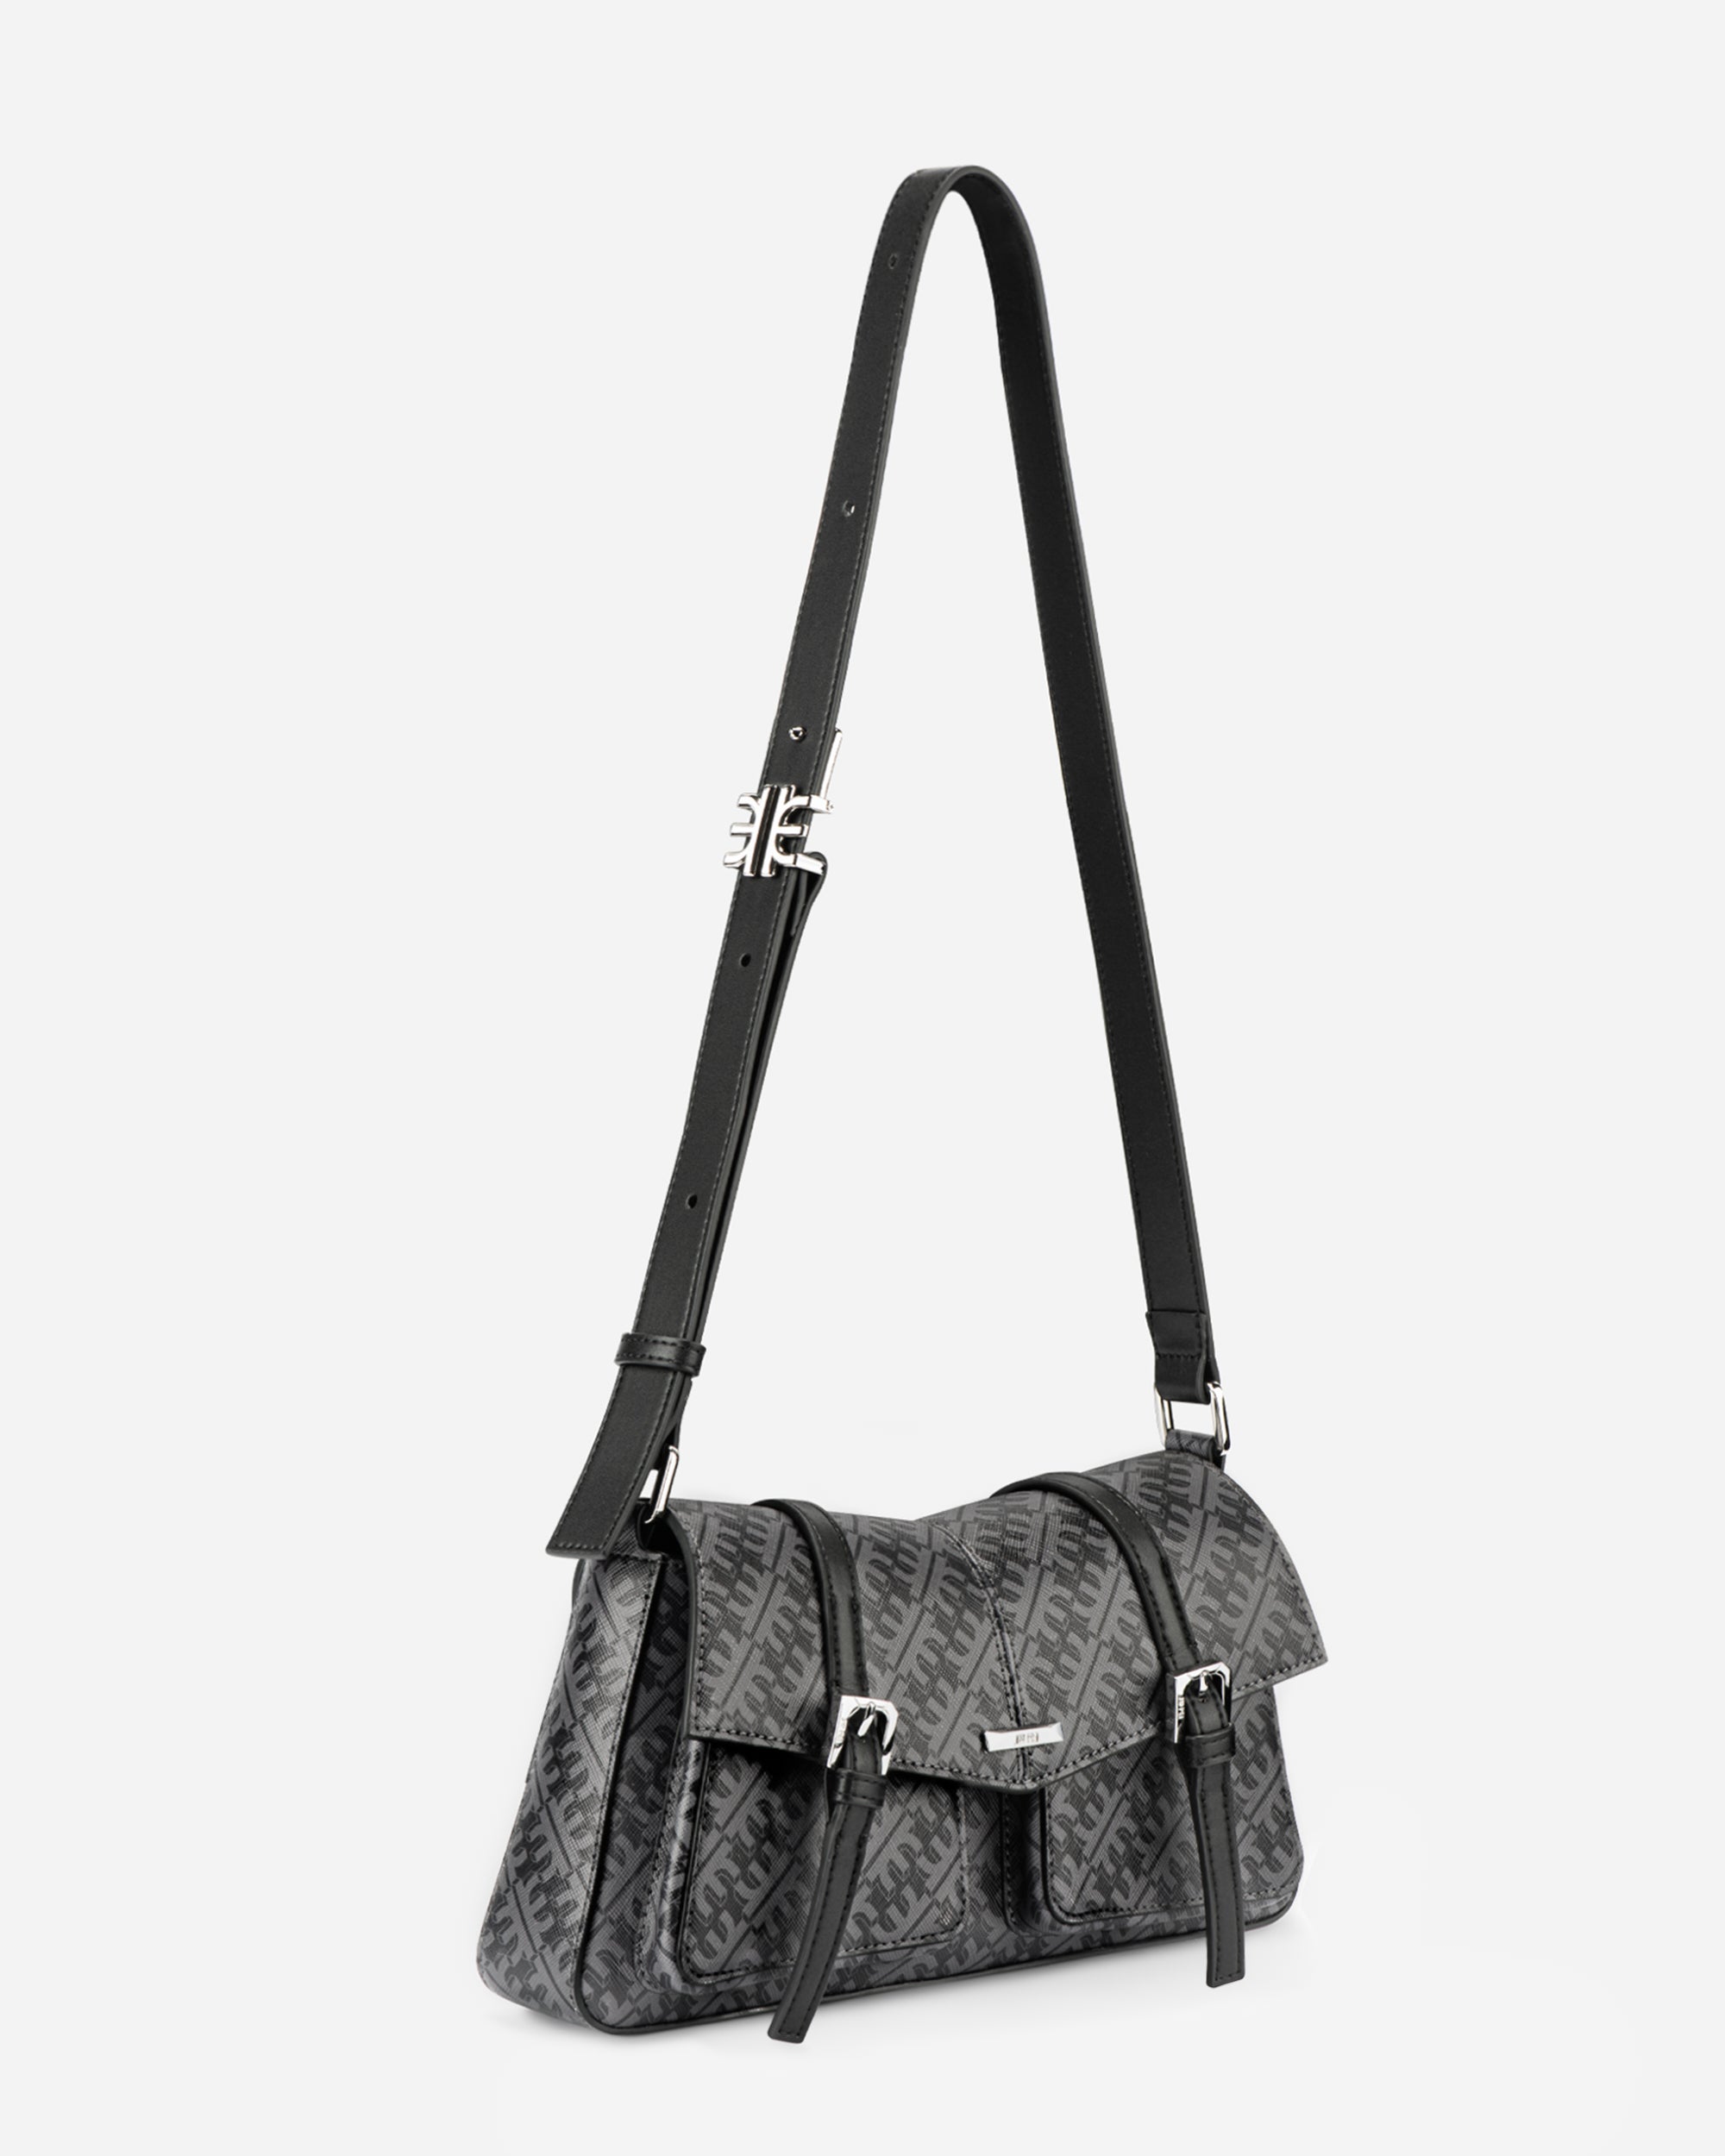 FEI Messenger Bag - Iron Black